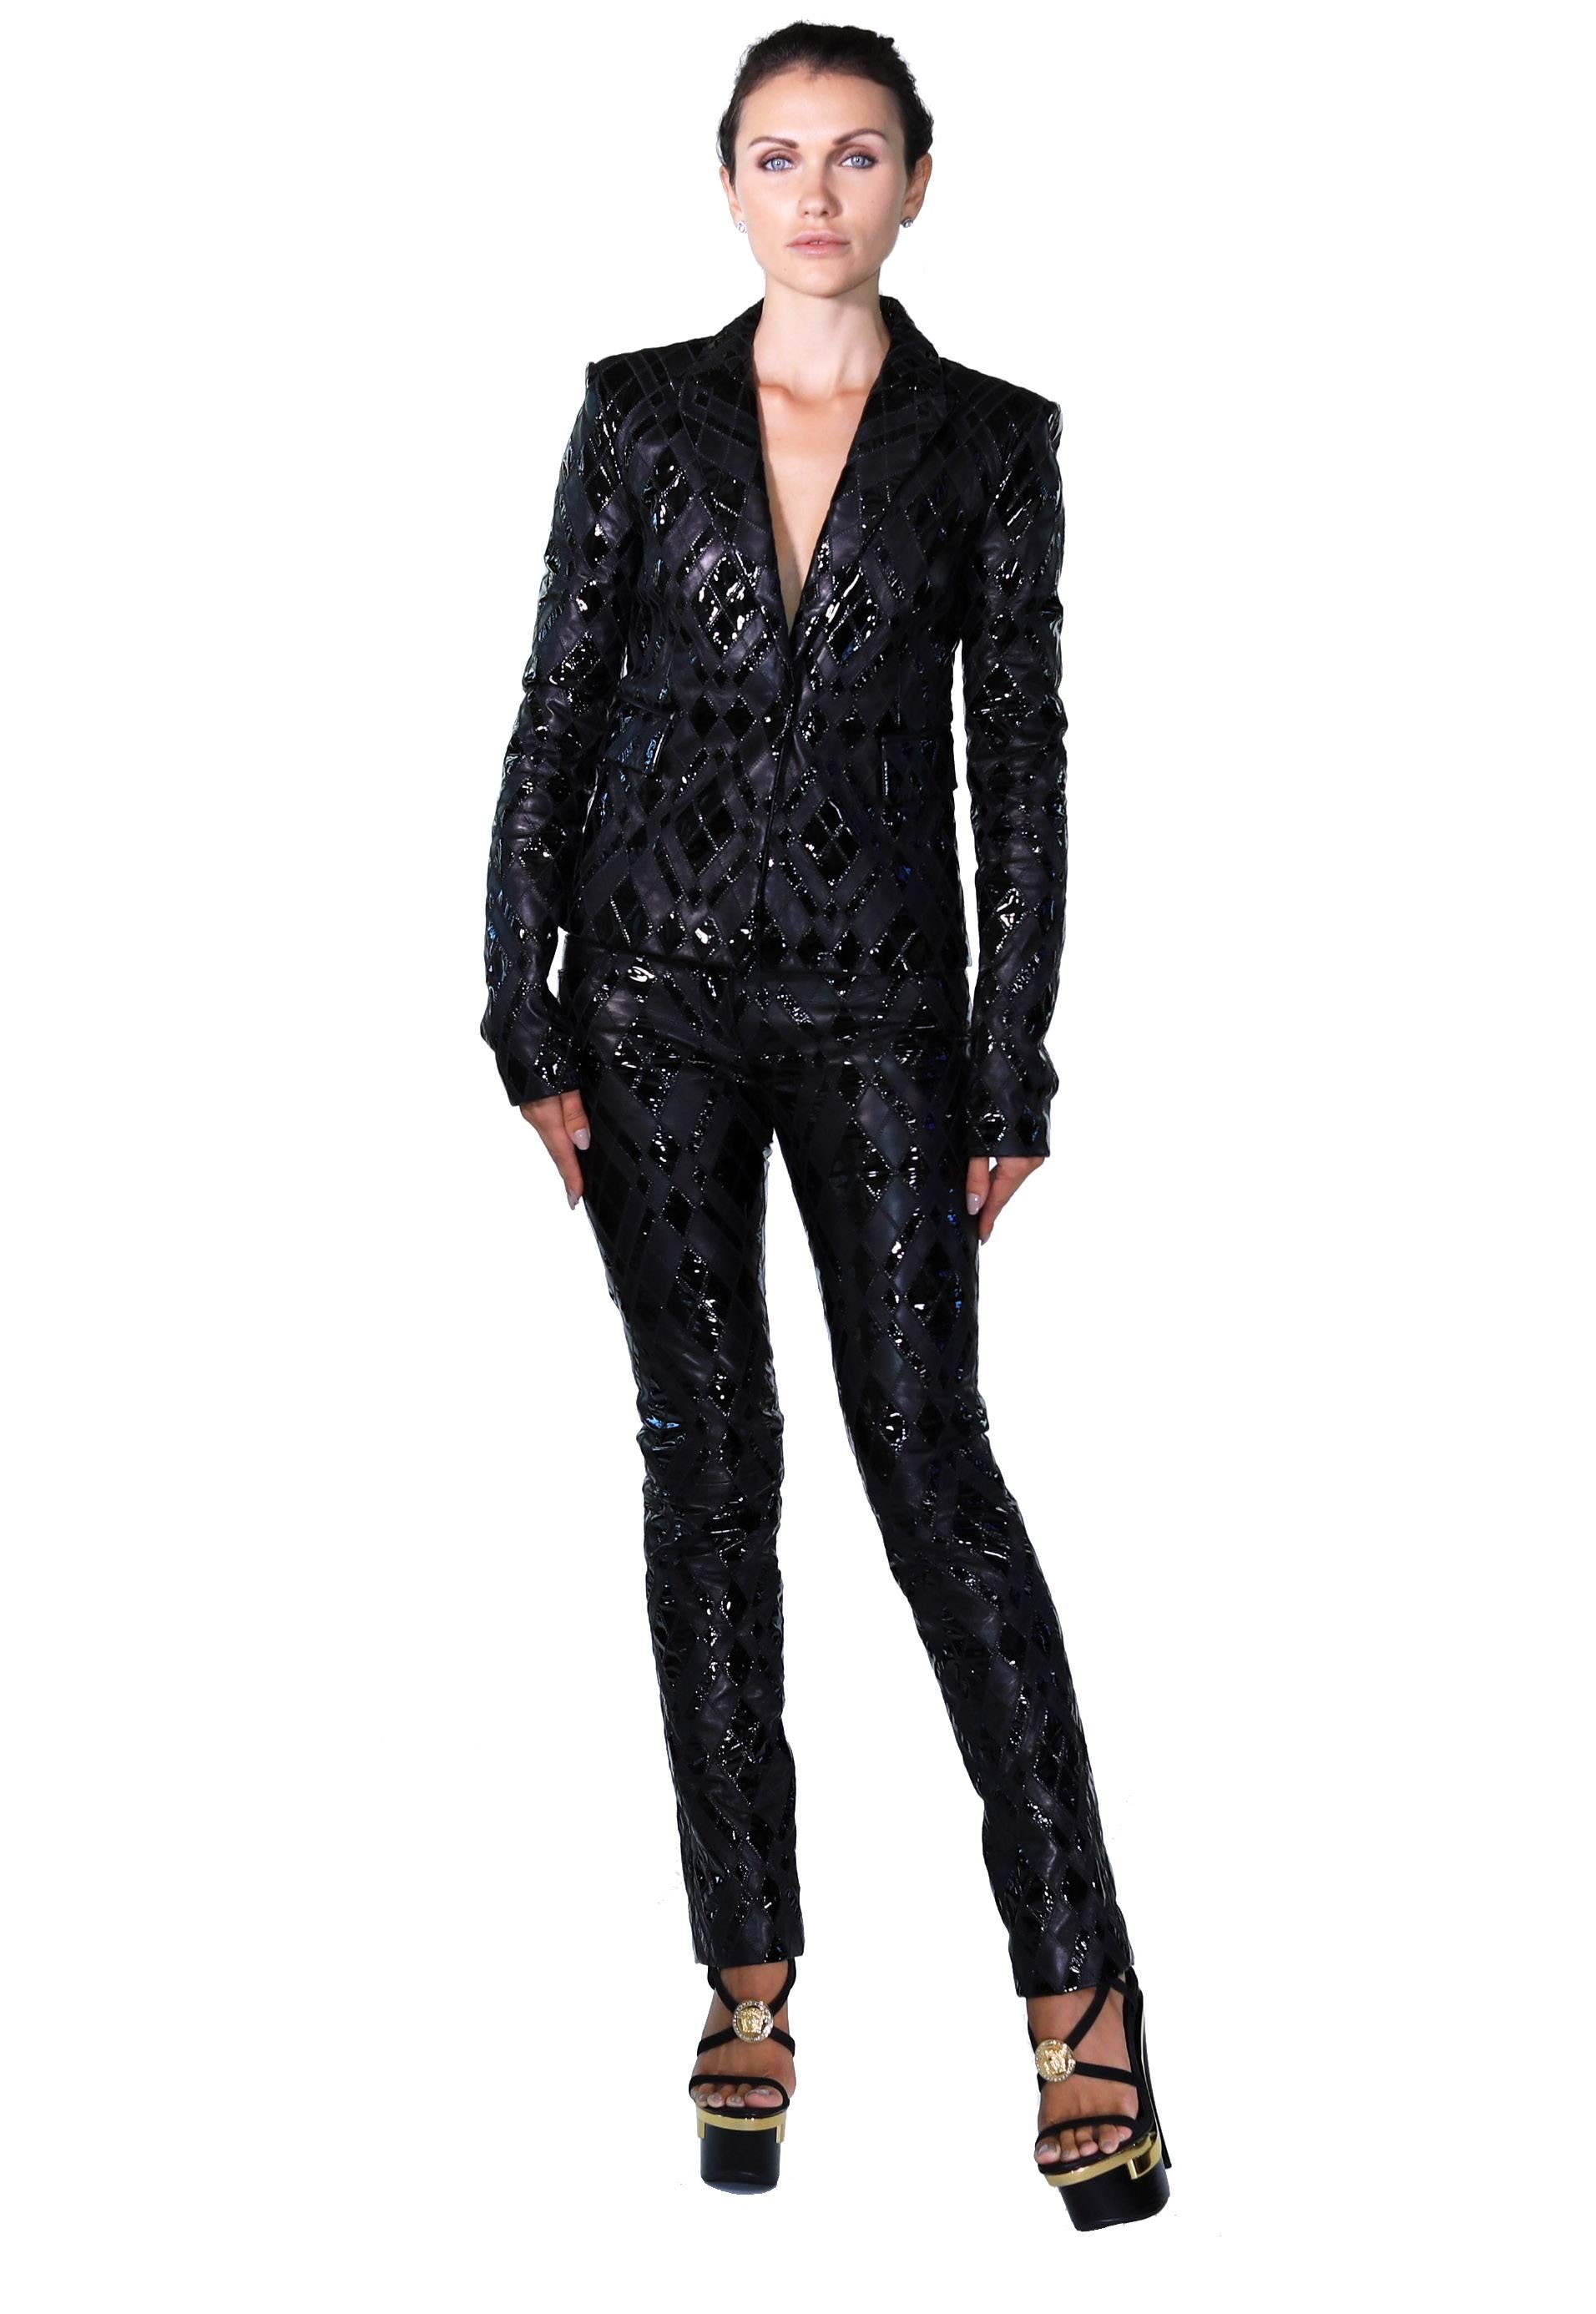 Nouveau 



VERSACE

Costume pantalon

100% cuir

Patchwork

Entièrement doublé

IT Taille 38 - US 2

Neuf, avec étiquettes. Livré avec un cintre Versace et un sac à vêtements de voyage Versace.